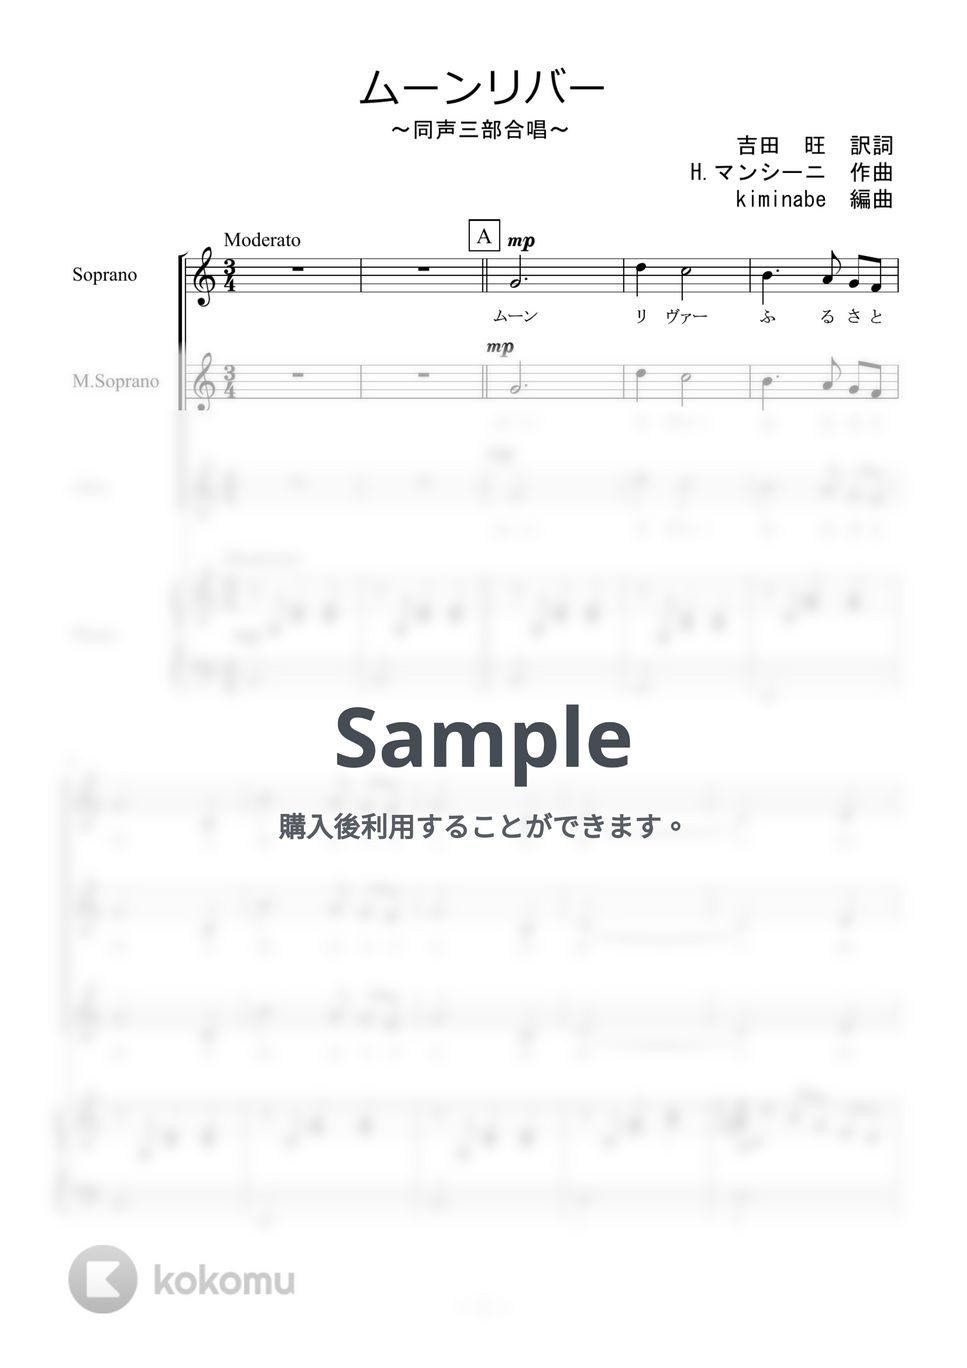 ヘンリー・マンシーニ - ムーンリバー (同声三部合唱) by kiminabe